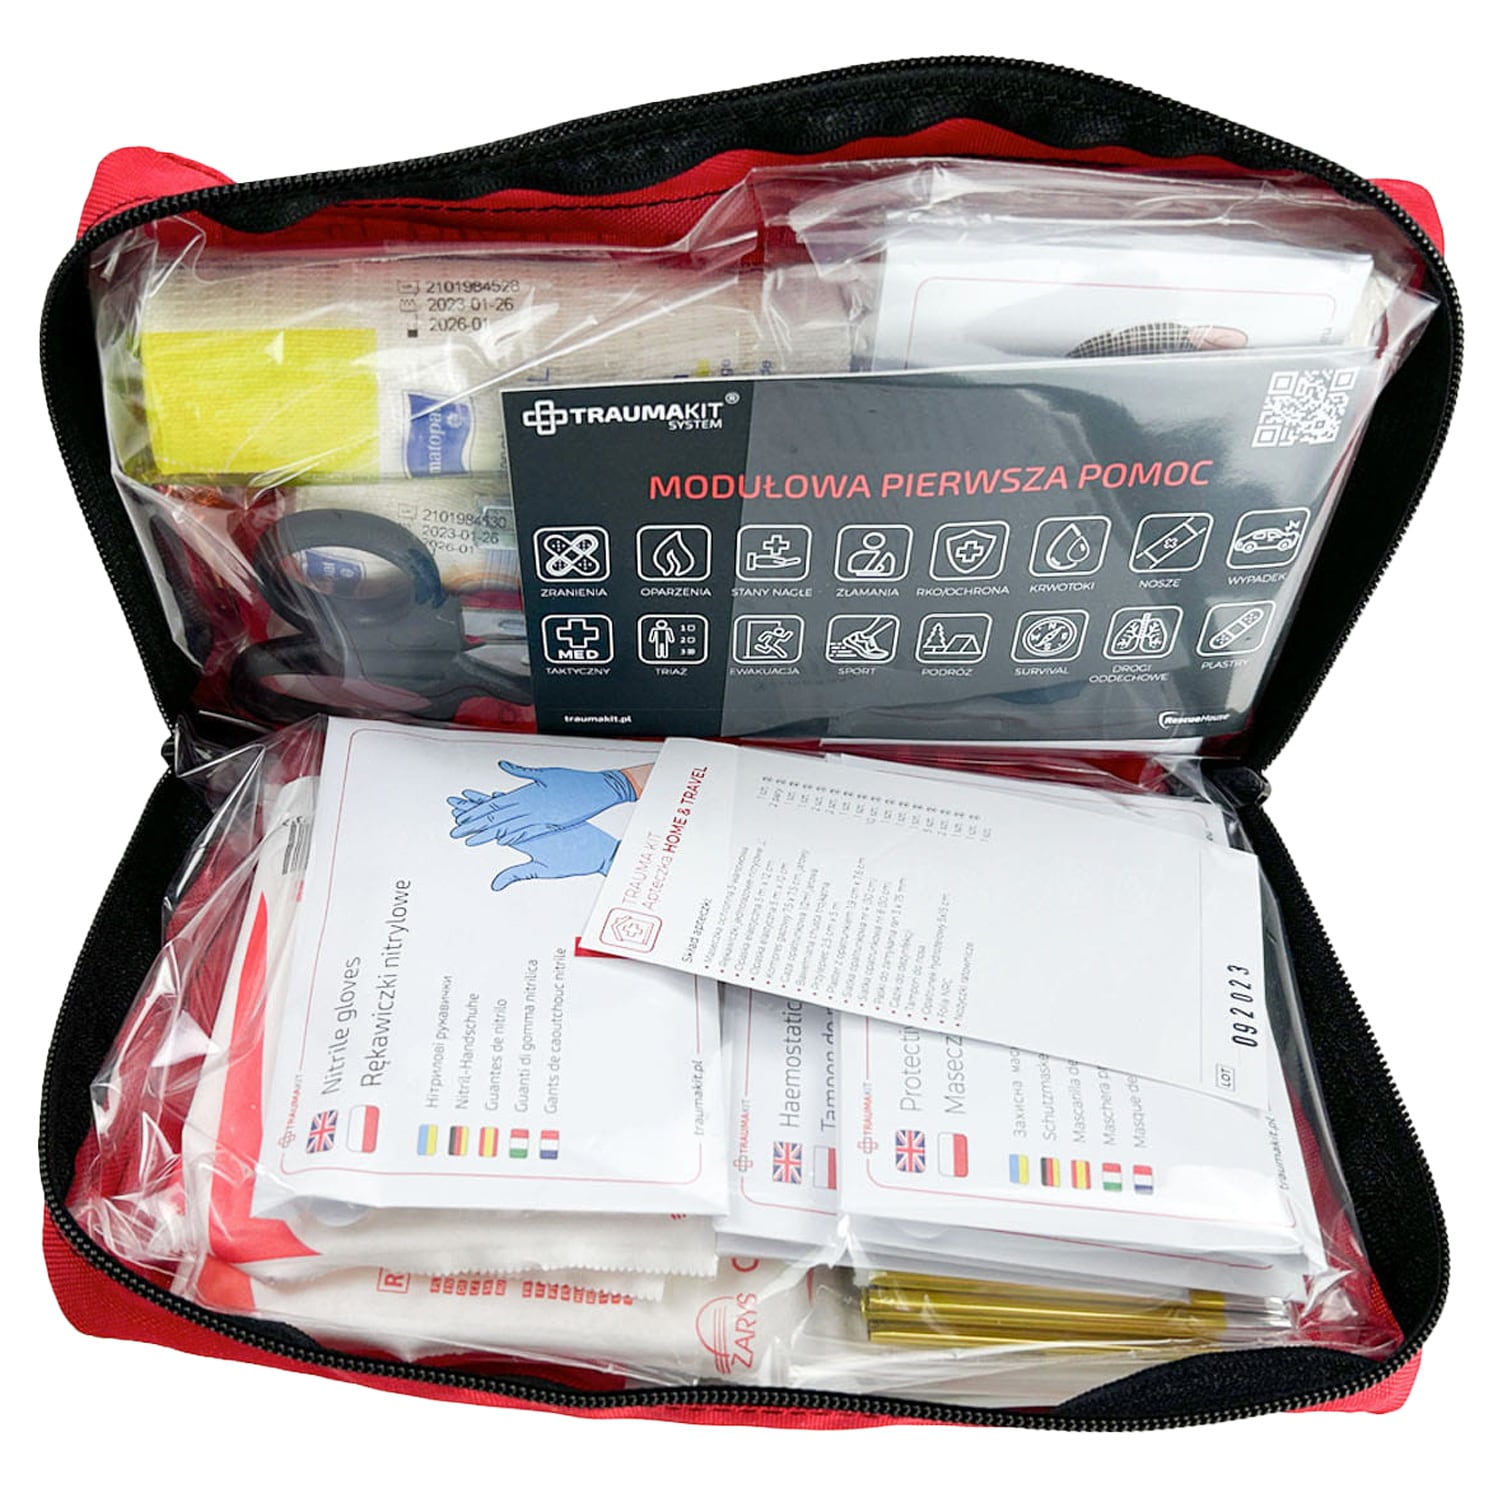 Apteczka modułowa AedMax Trauma Kit Home & Travel